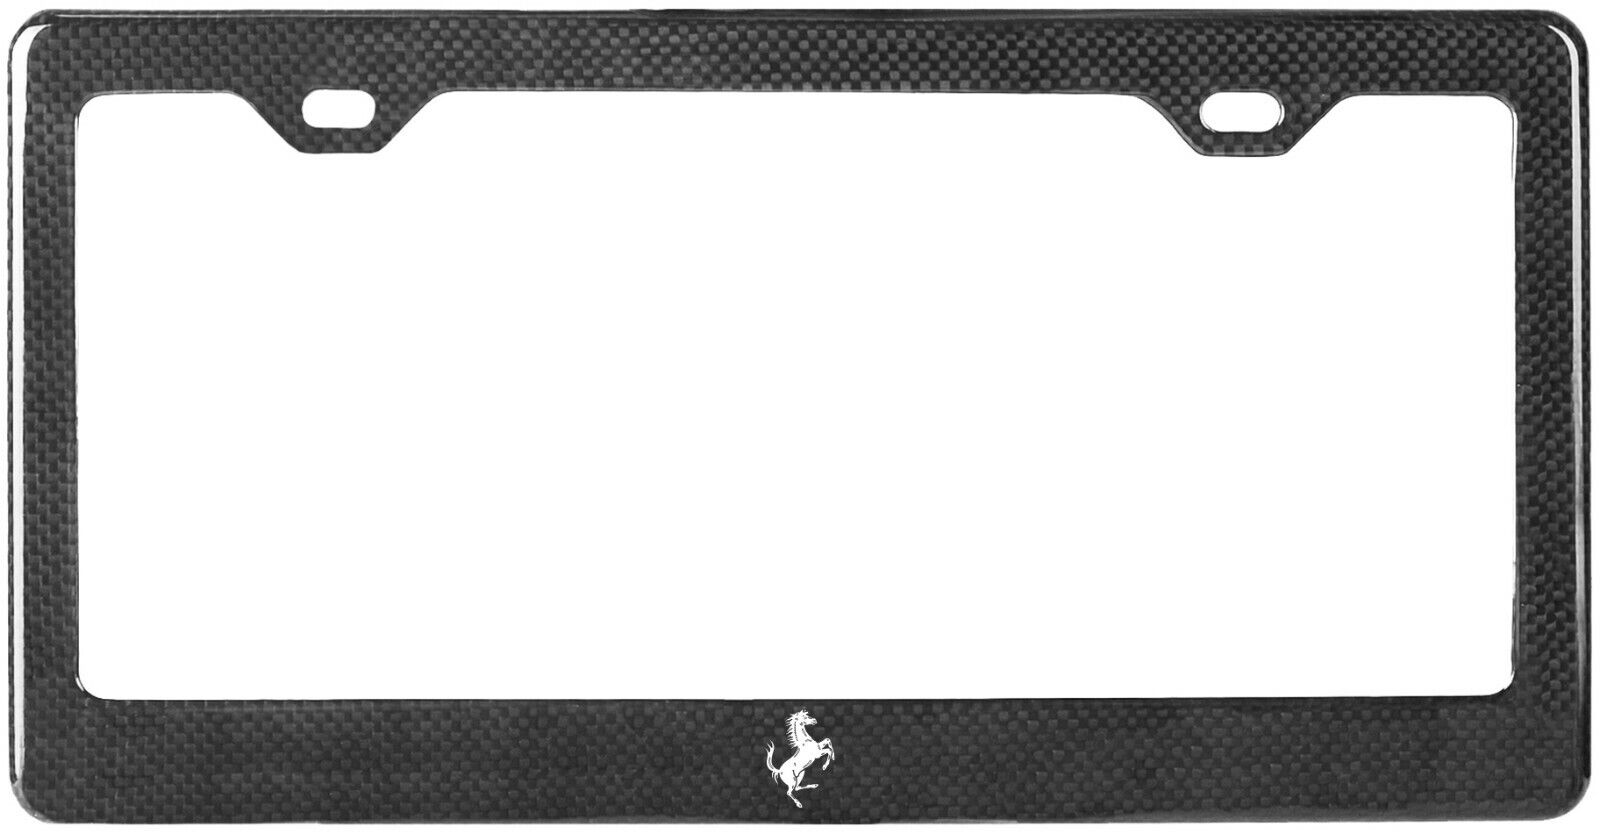 Custom Carbon Fiber License Plate Frame (Fits Ferrari Models)